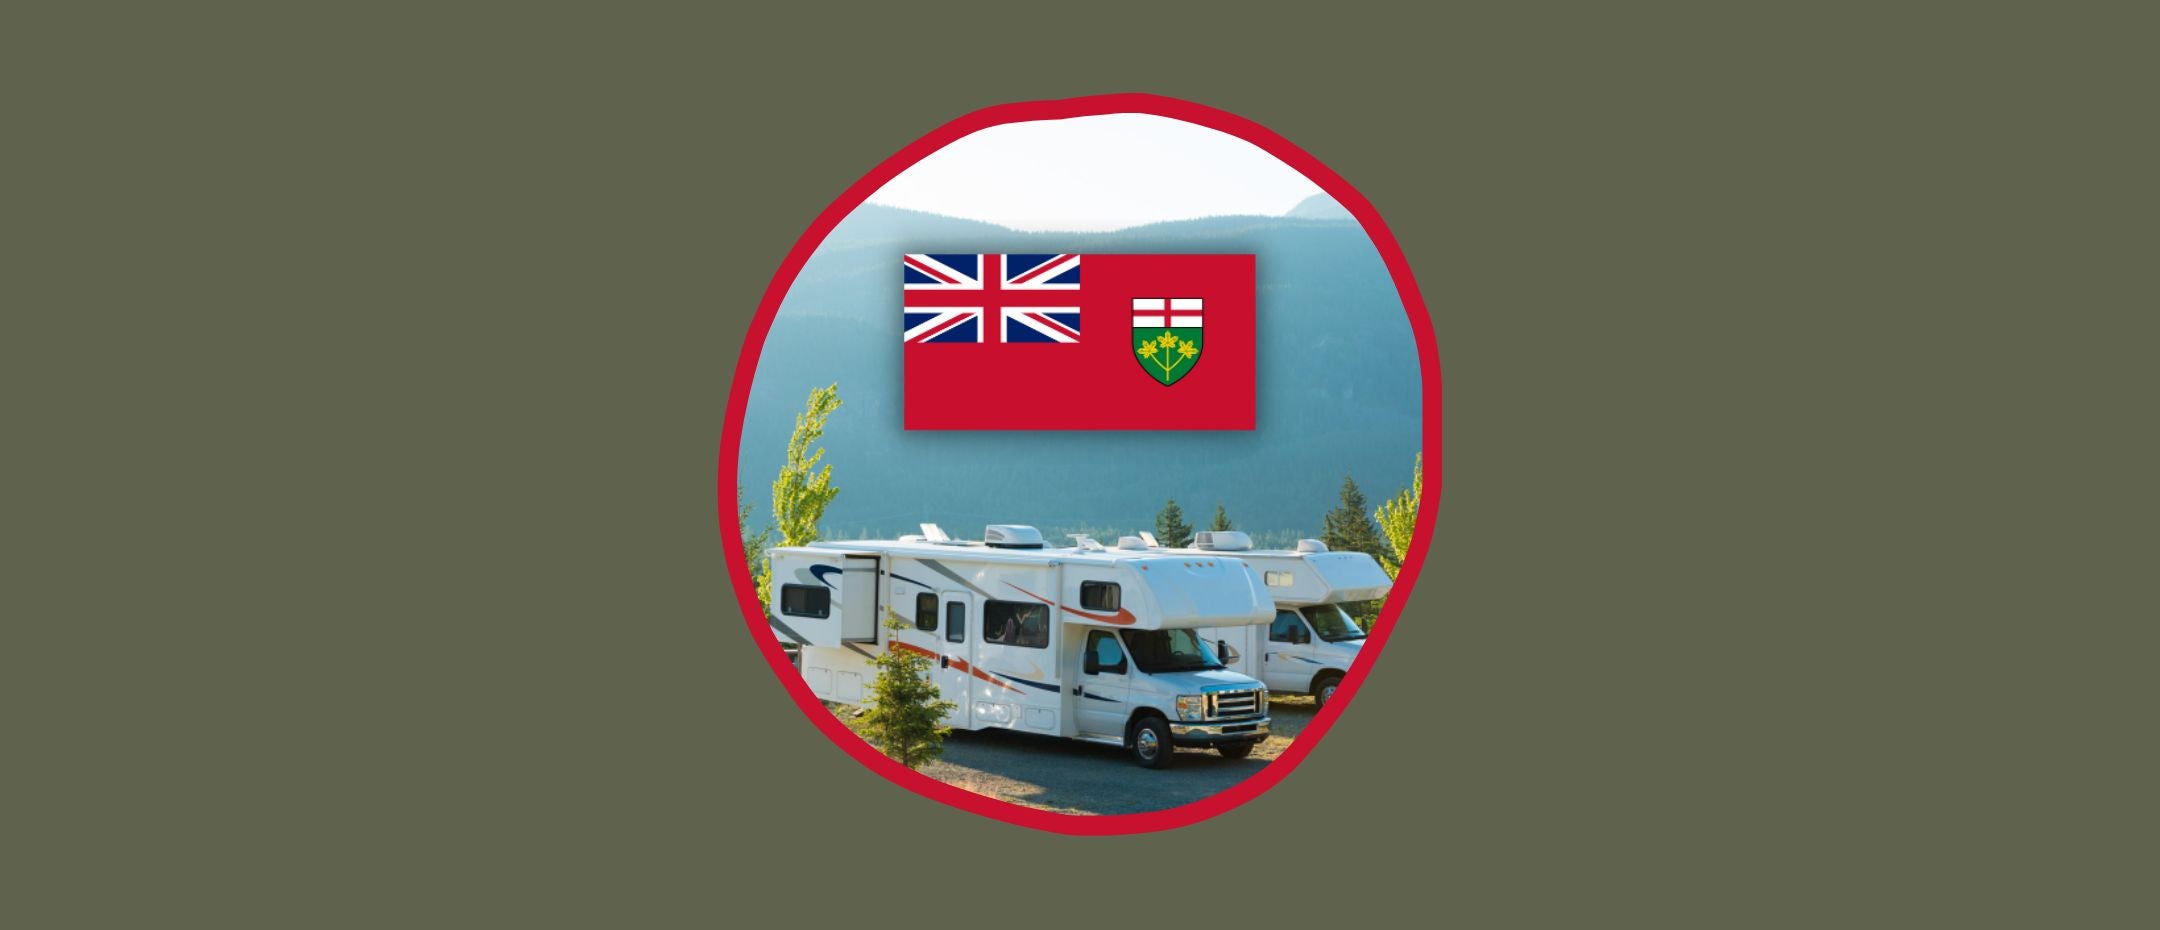 Un terrain de camping pour VR incluant le drapeau de l'Ontario